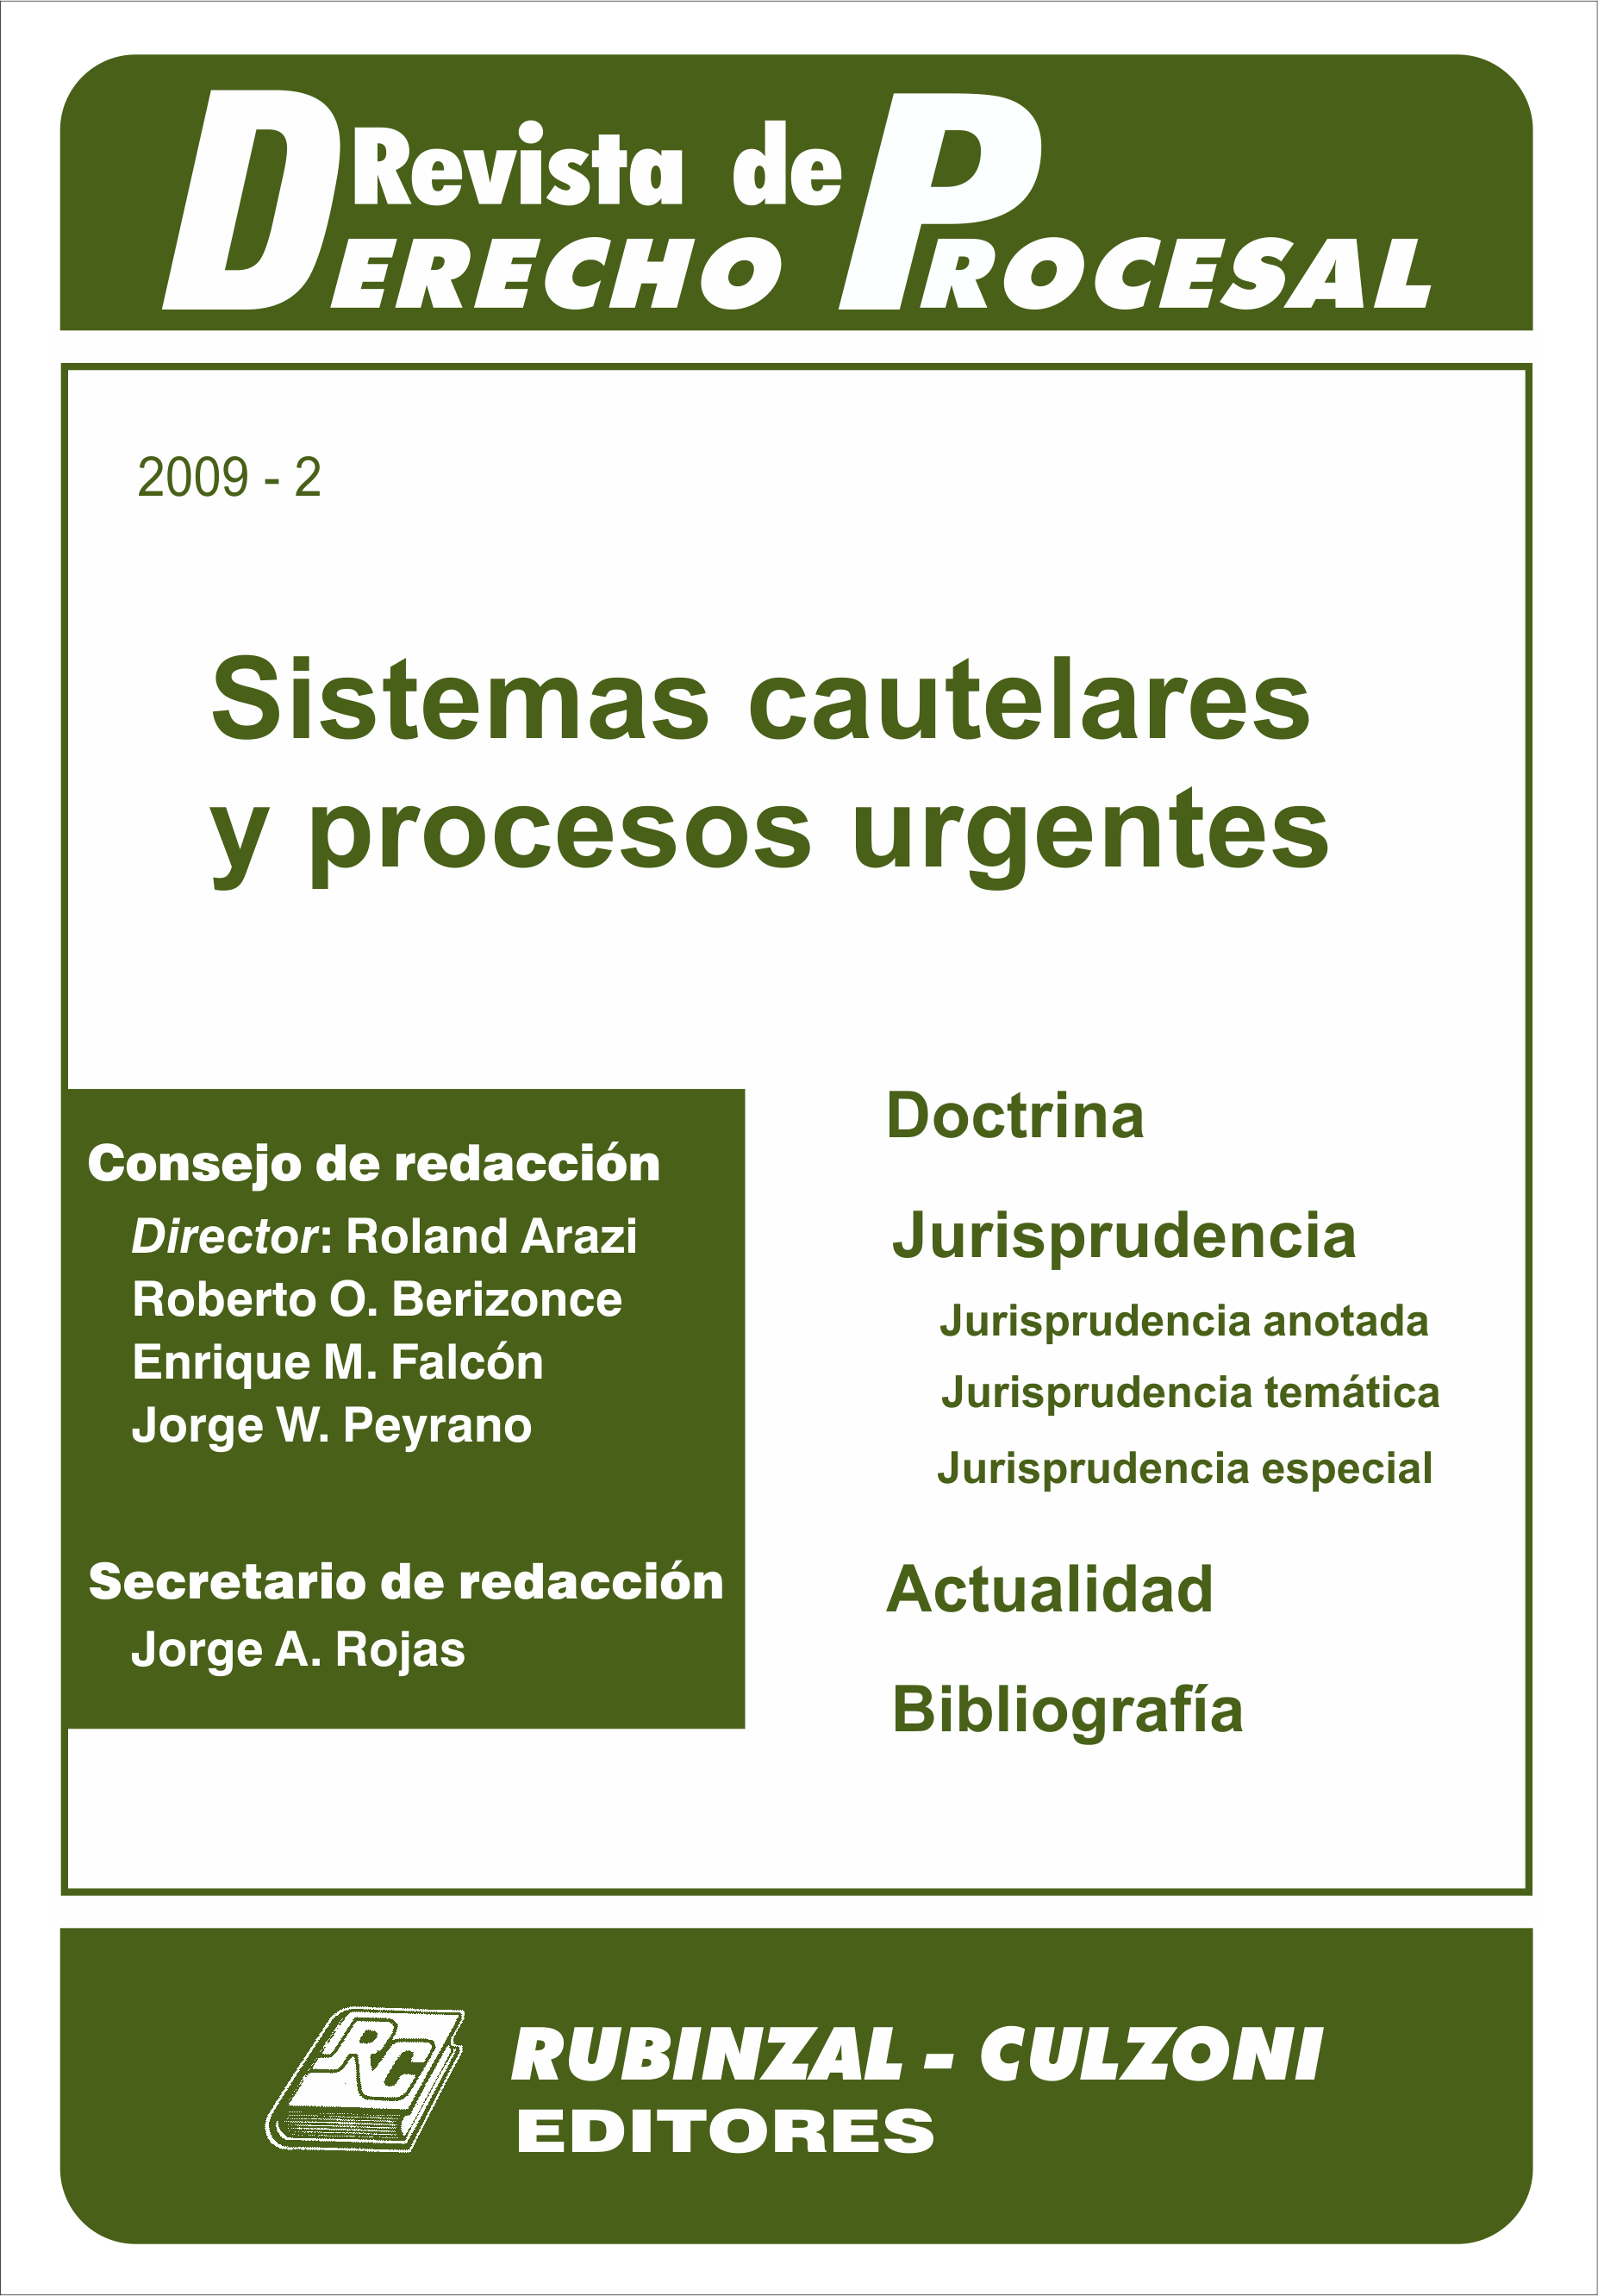 Revista de Derecho Procesal - Sistemas cautelares y procesos urgentes